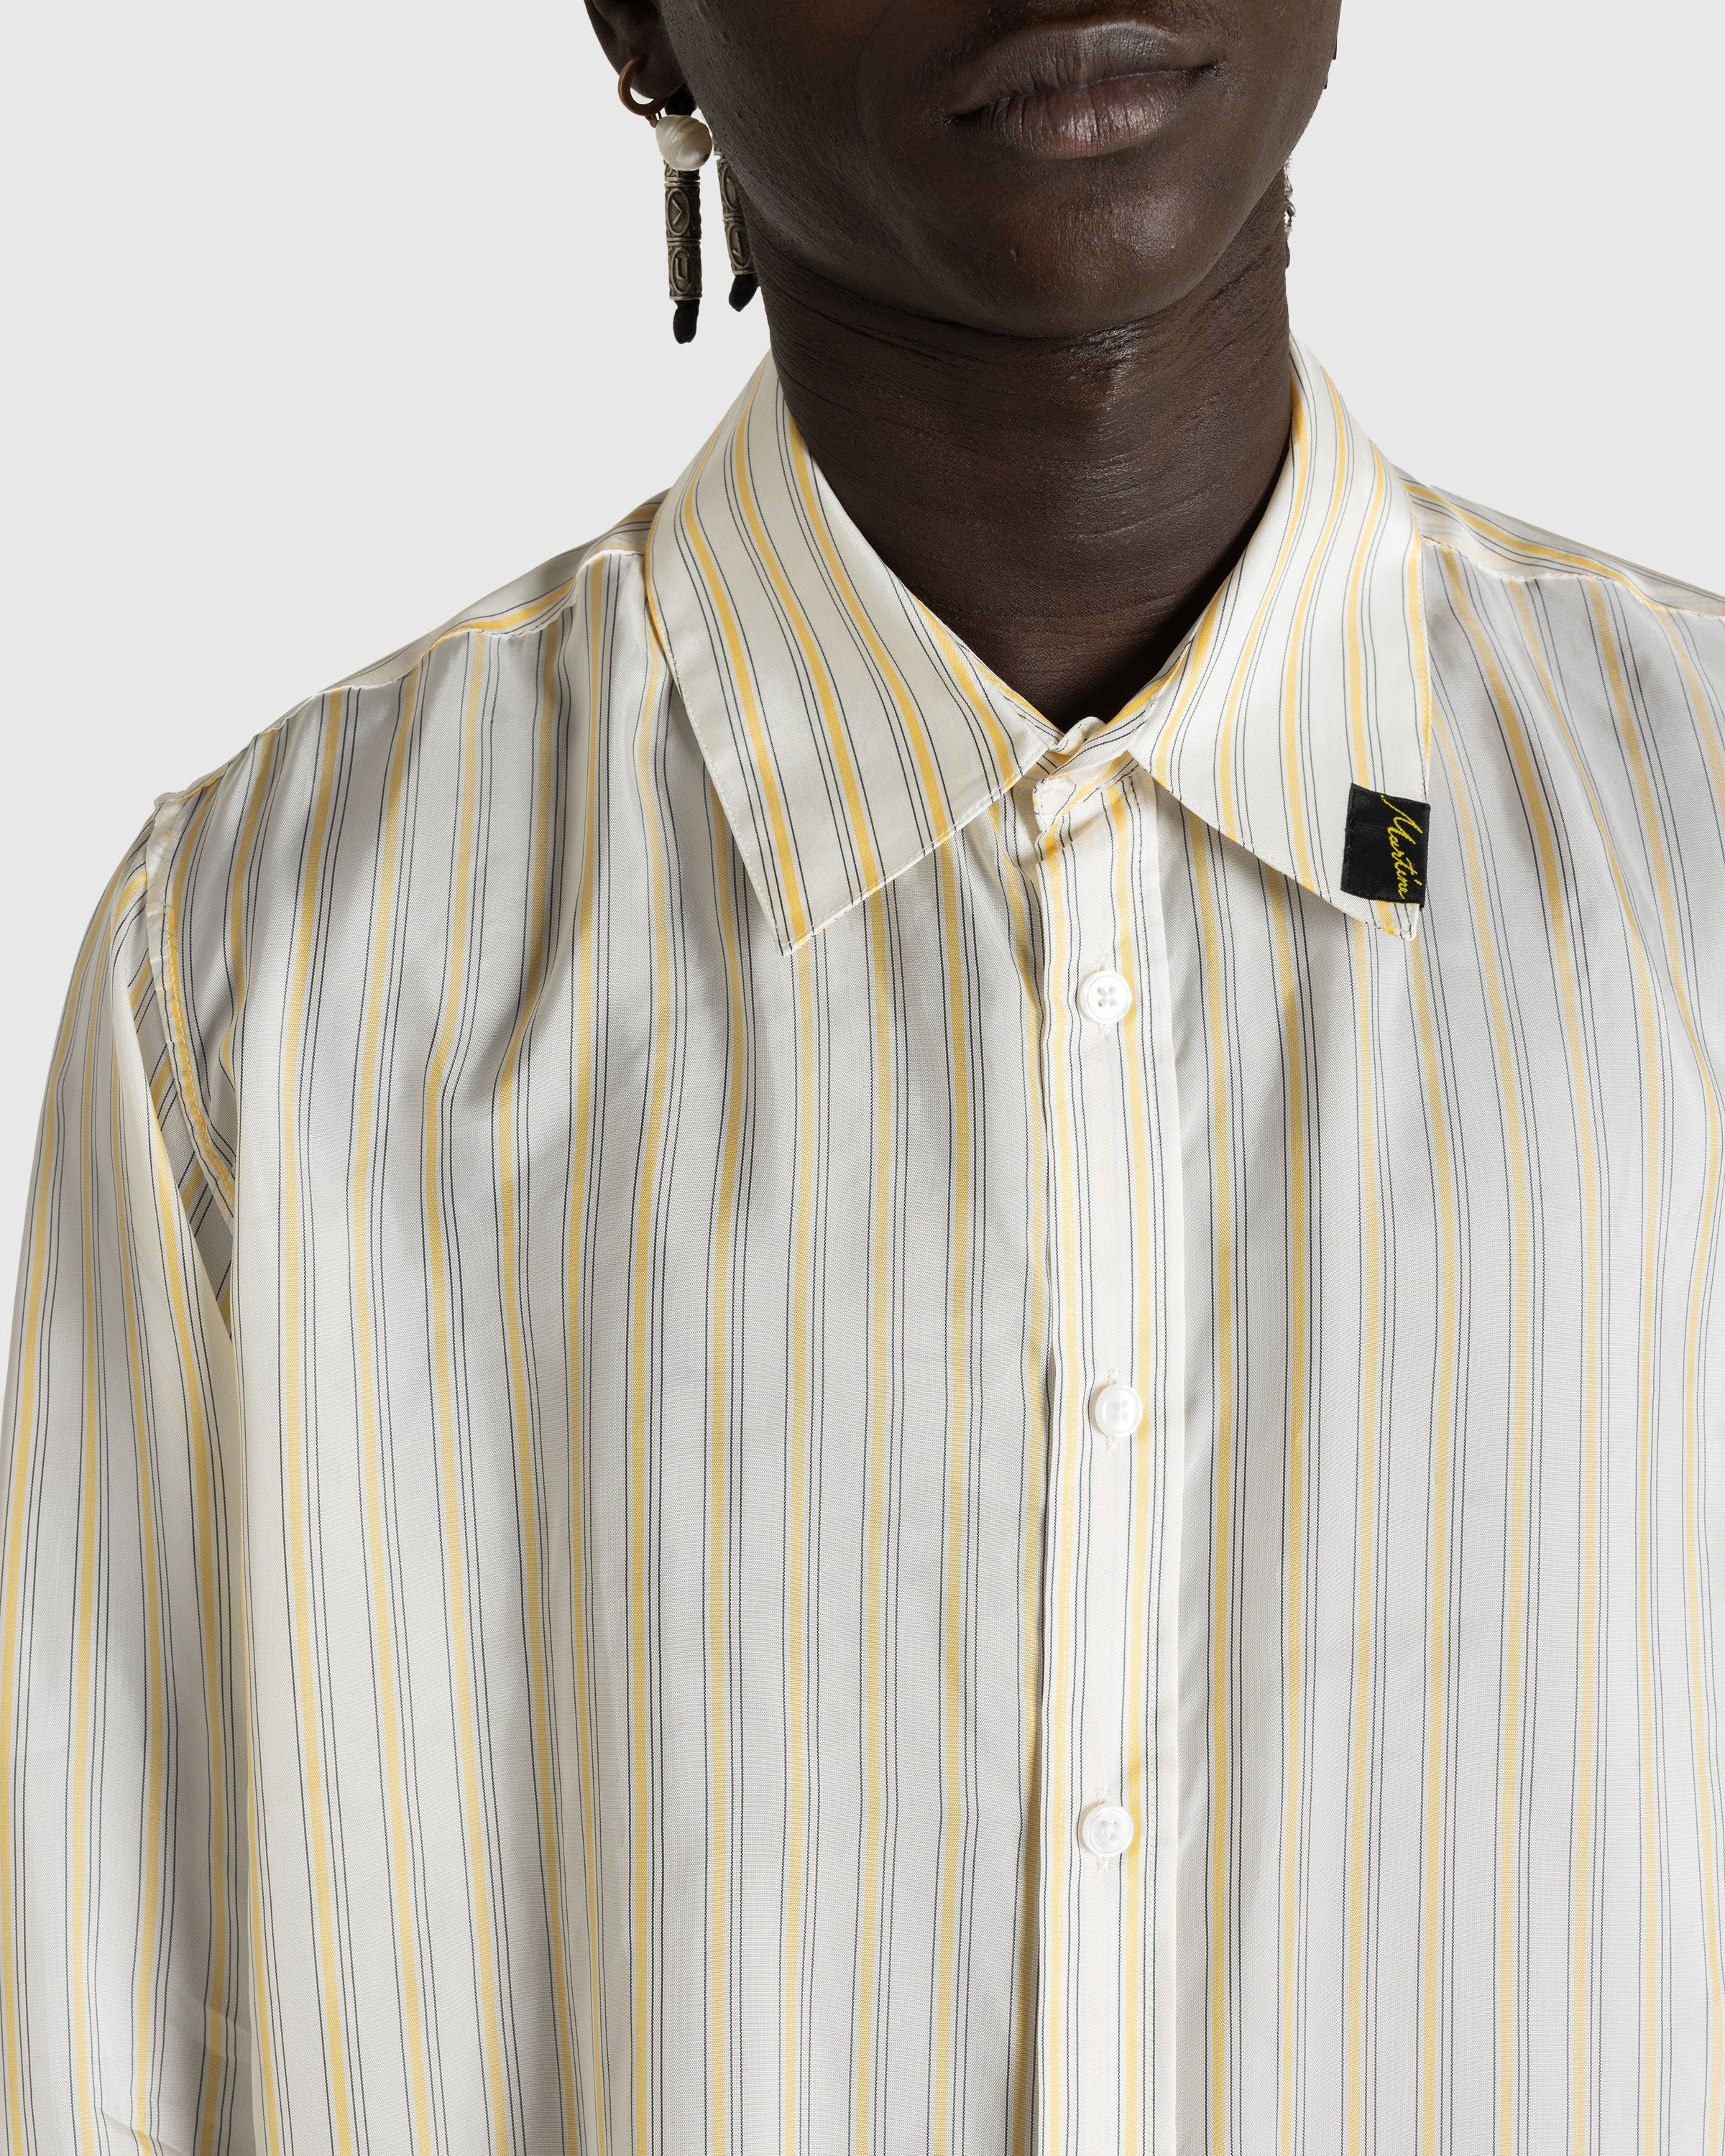 Martine Rose - Classic Shirt Yellow/White Stripe - Clothing - Yellow - Image 5